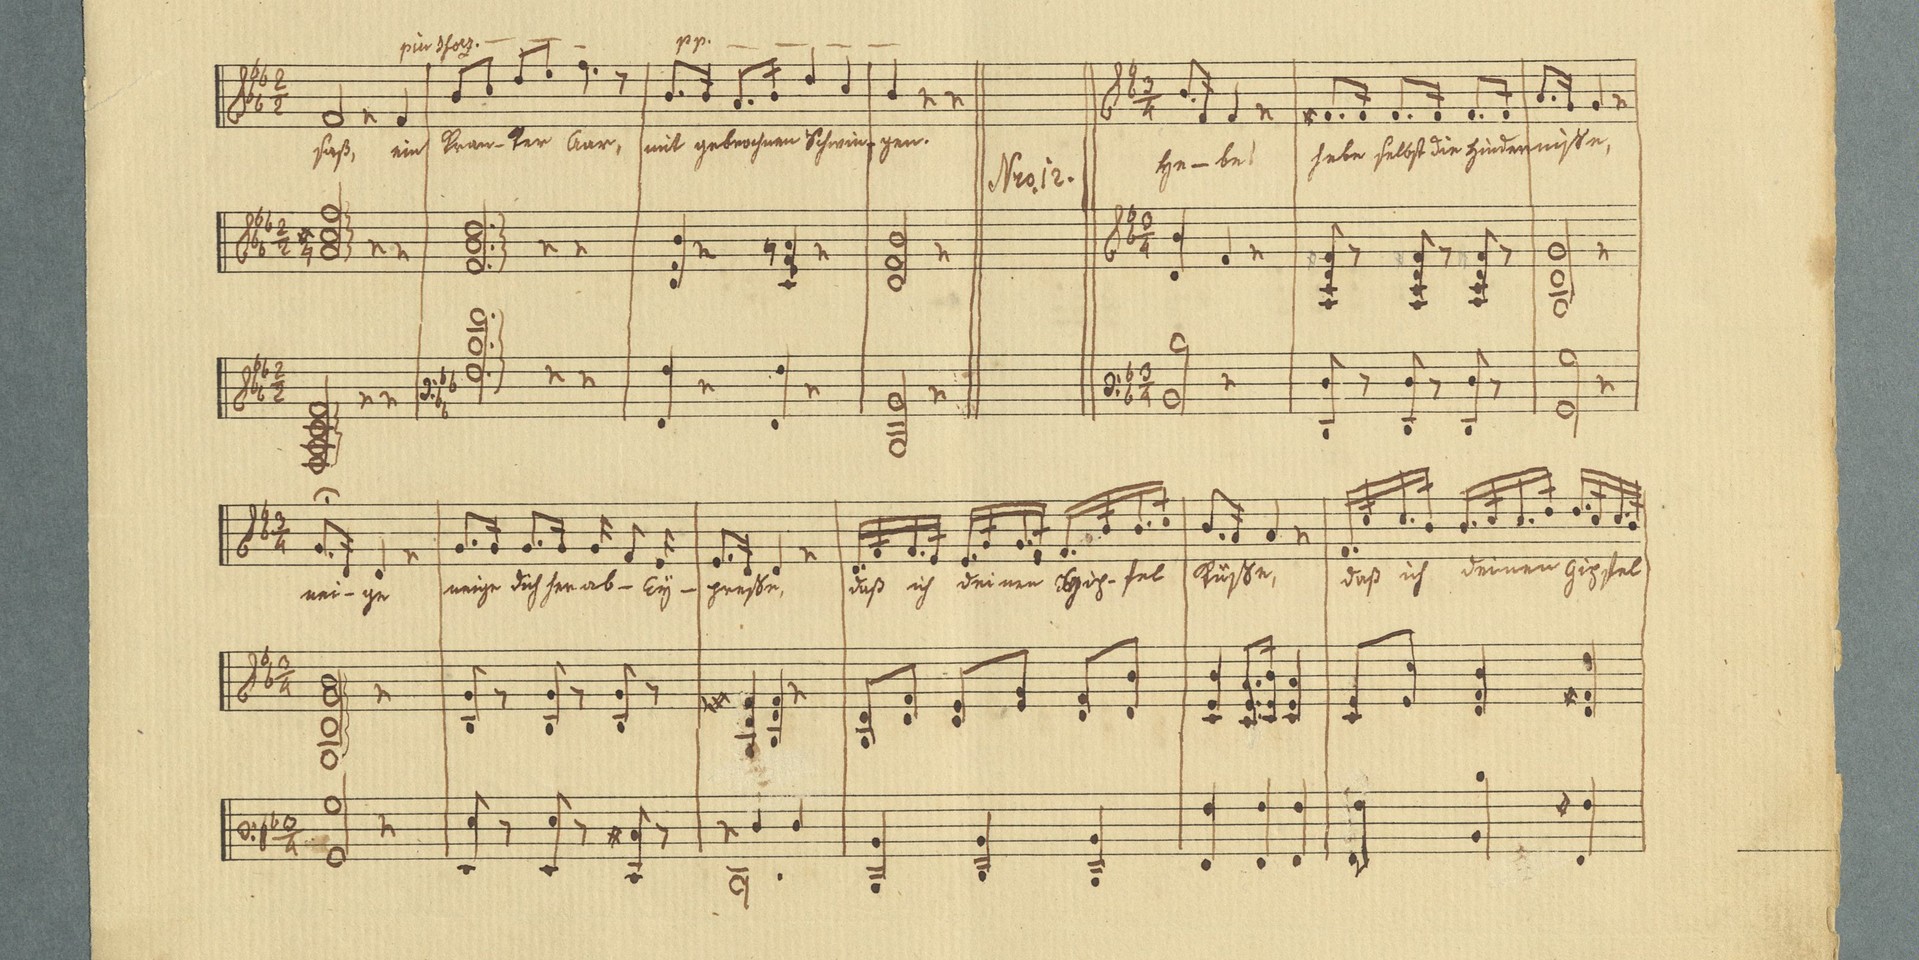 Liedblatt mit Drostes Handschrift zu "Der weiße Aar". Der Gedichttext ist unter den Noten platziert.